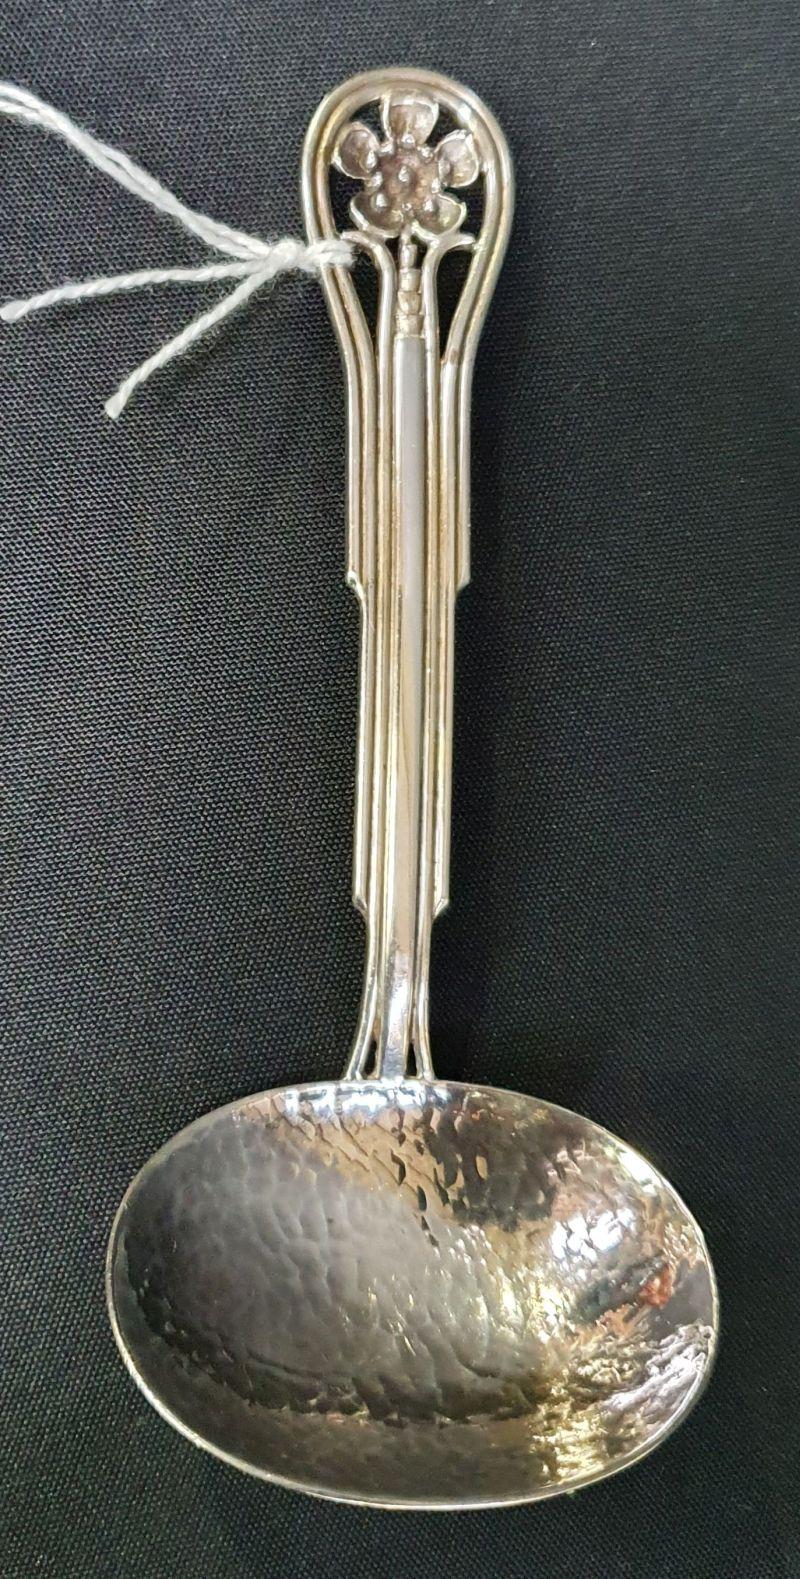 australia royal tour spoon